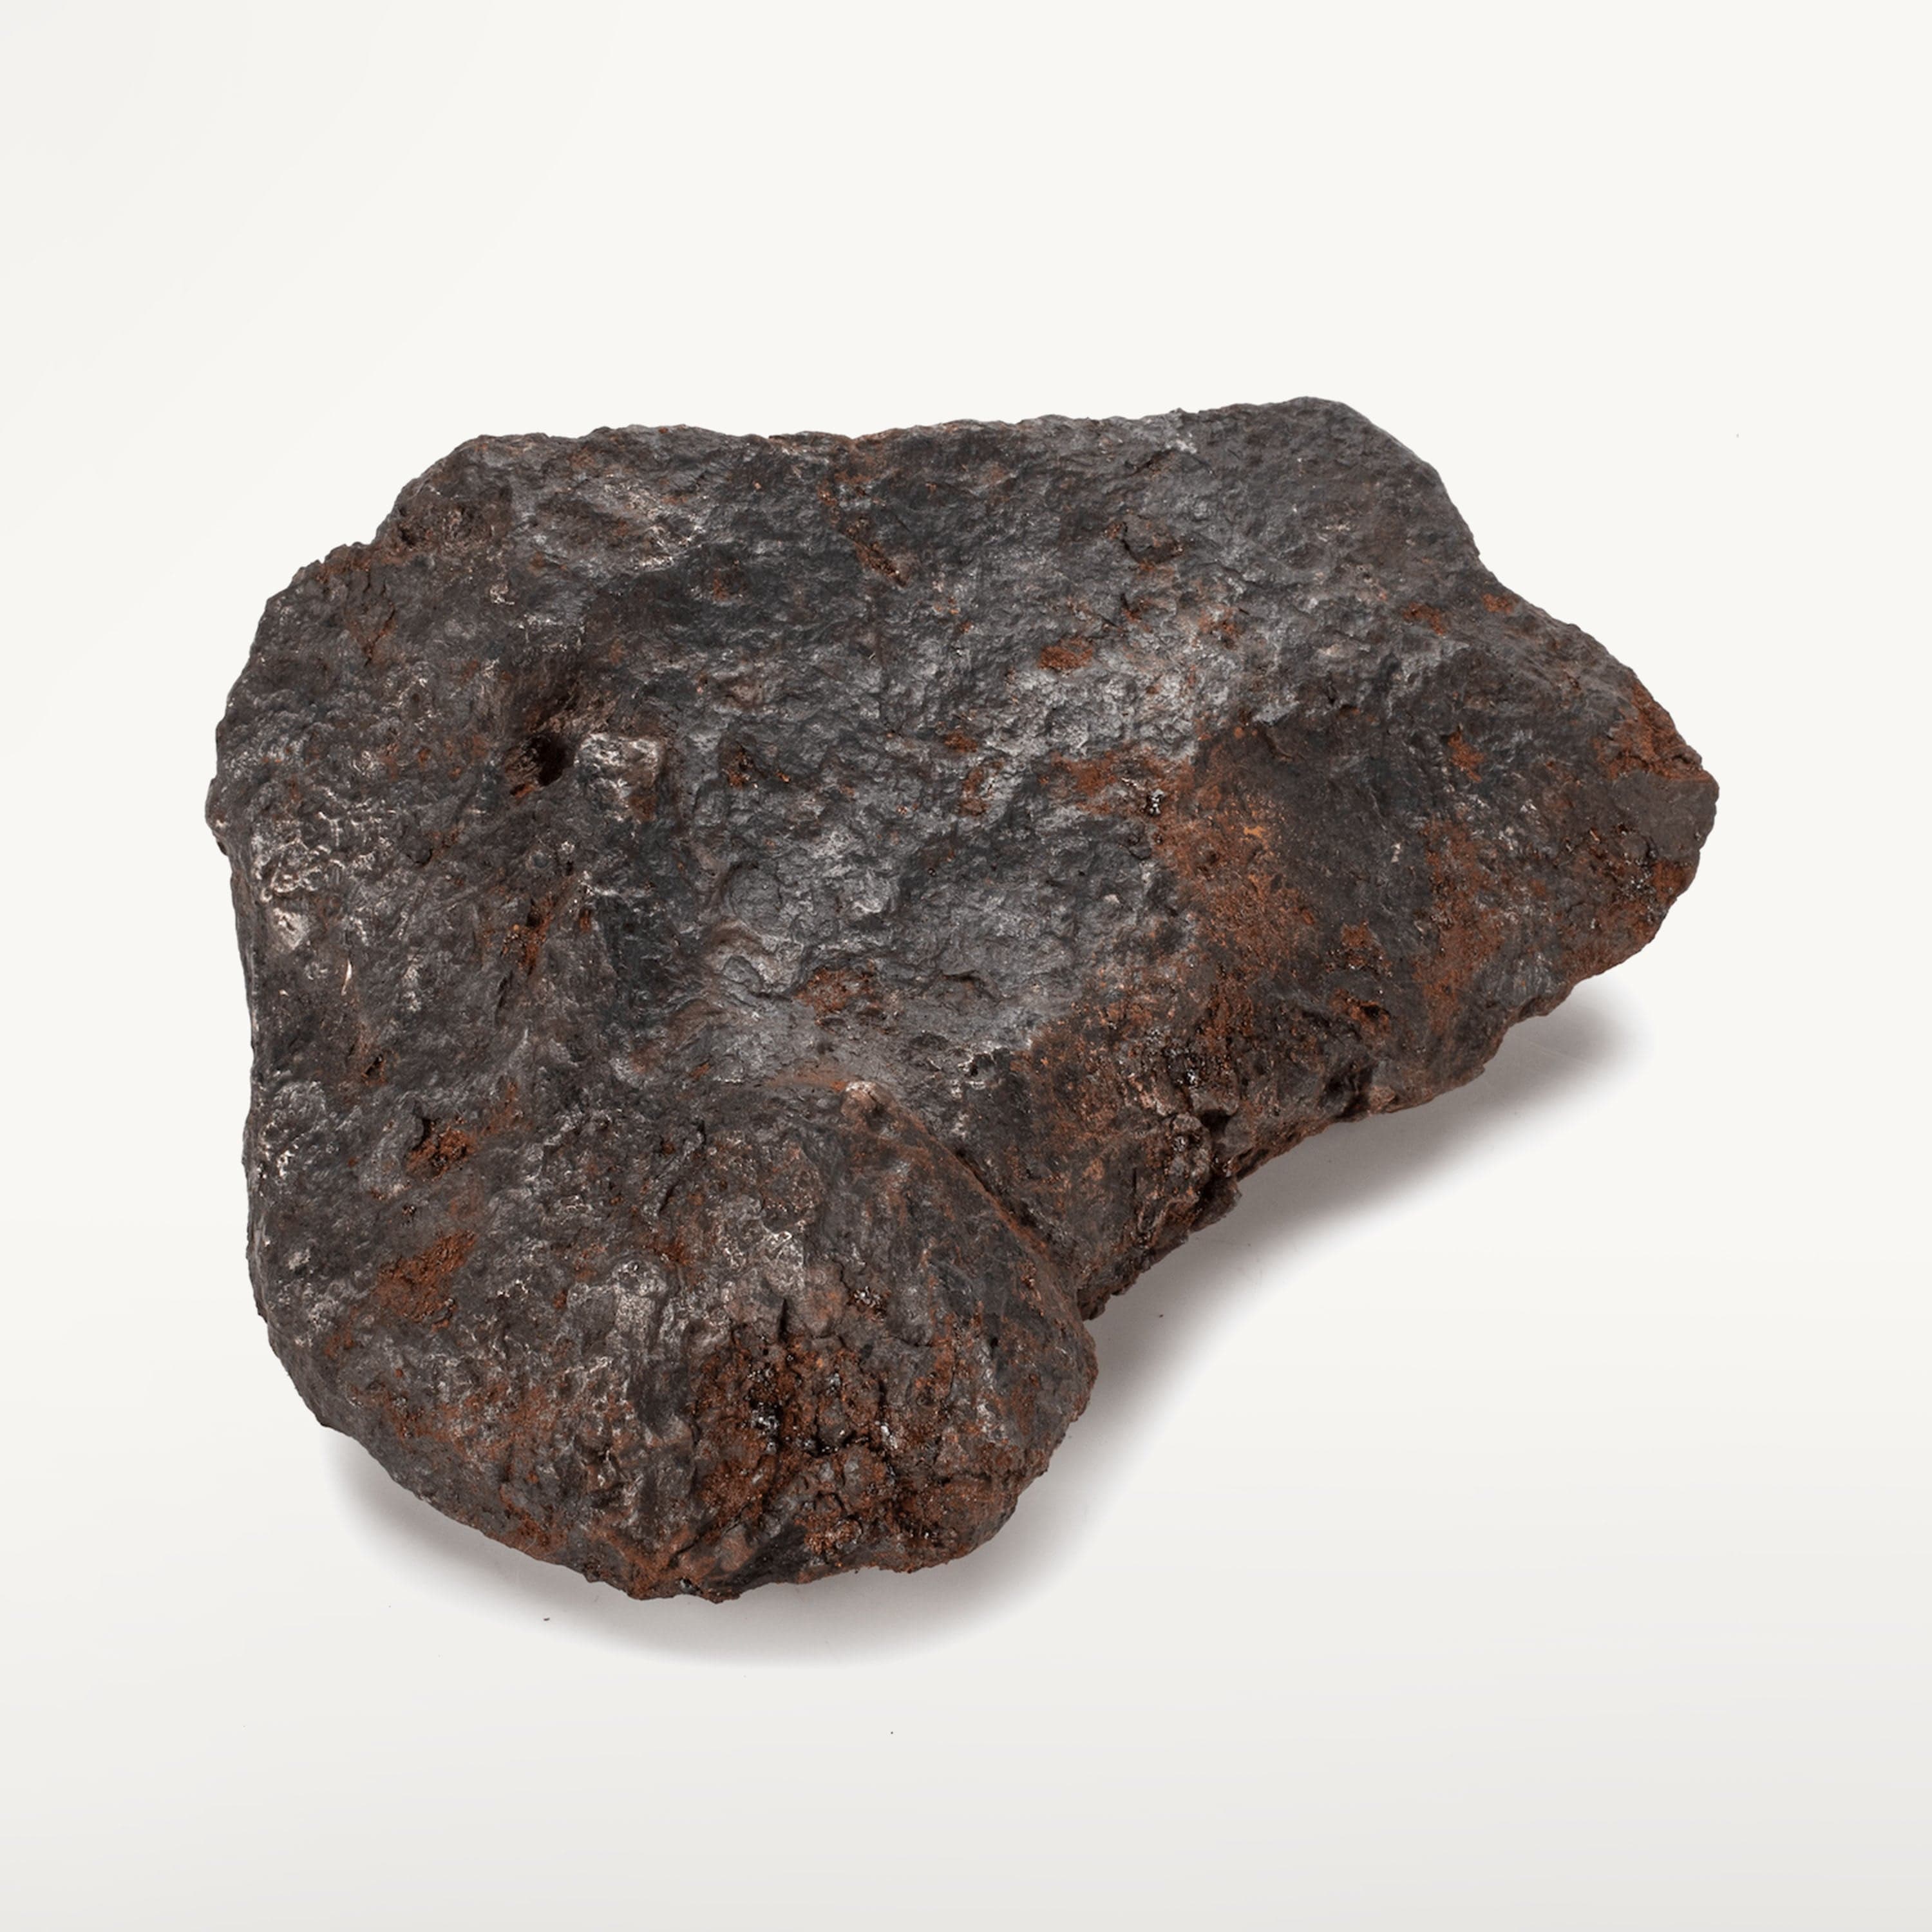 KALIFANO | Natural Campo Del Cielo Iron Meteorite for Sale - 2.2 kilos